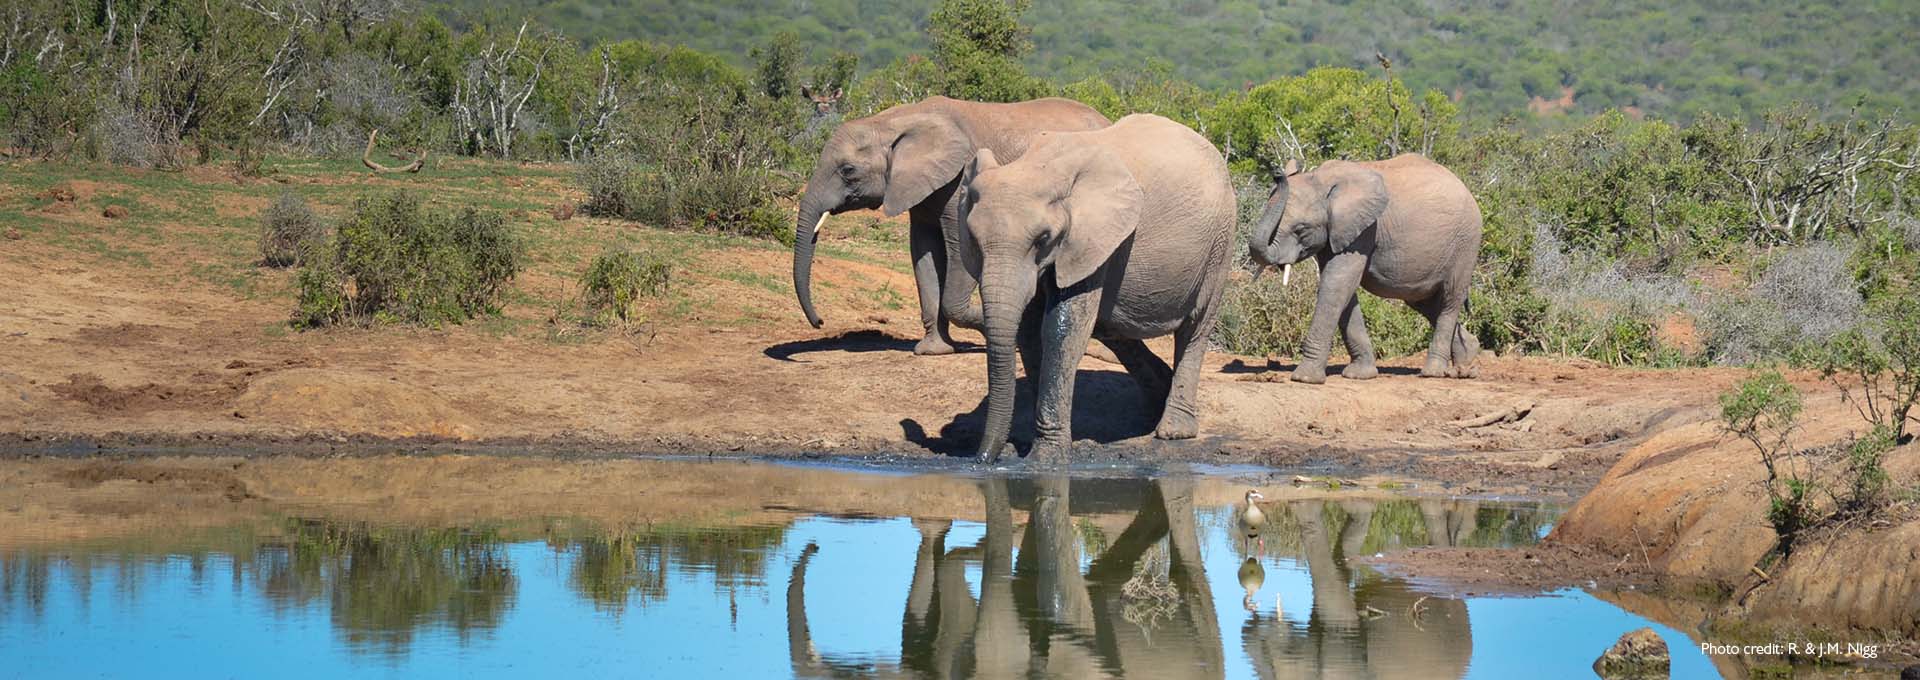 Image d'une famille d'éléphants au bord d'un petit lac avec des buissons verts en arrière-plan, photographiée par des utilisateurs d'aides auditives Bernafon Alpha.